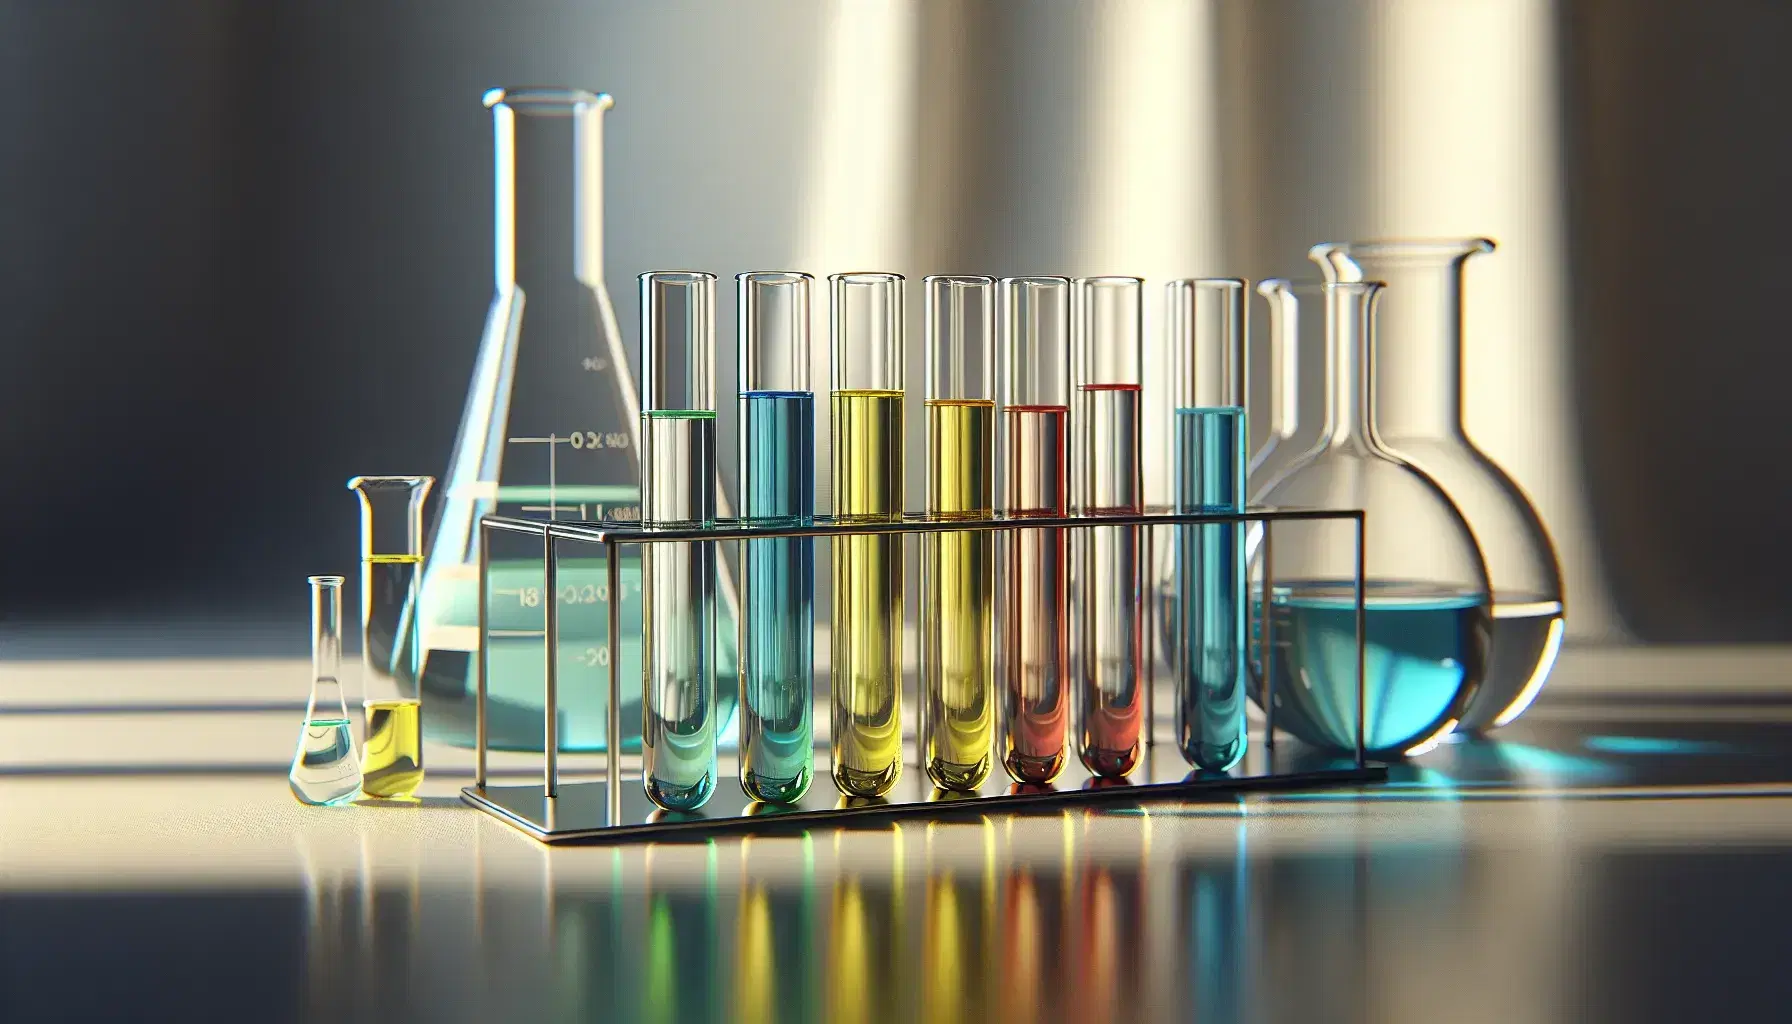 Conjunto de tubos de ensayo de vidrio con líquidos de colores azul, amarillo, rojo y verde en soporte metálico, junto a matraz Erlenmeyer y vaso de precipitados en laboratorio.